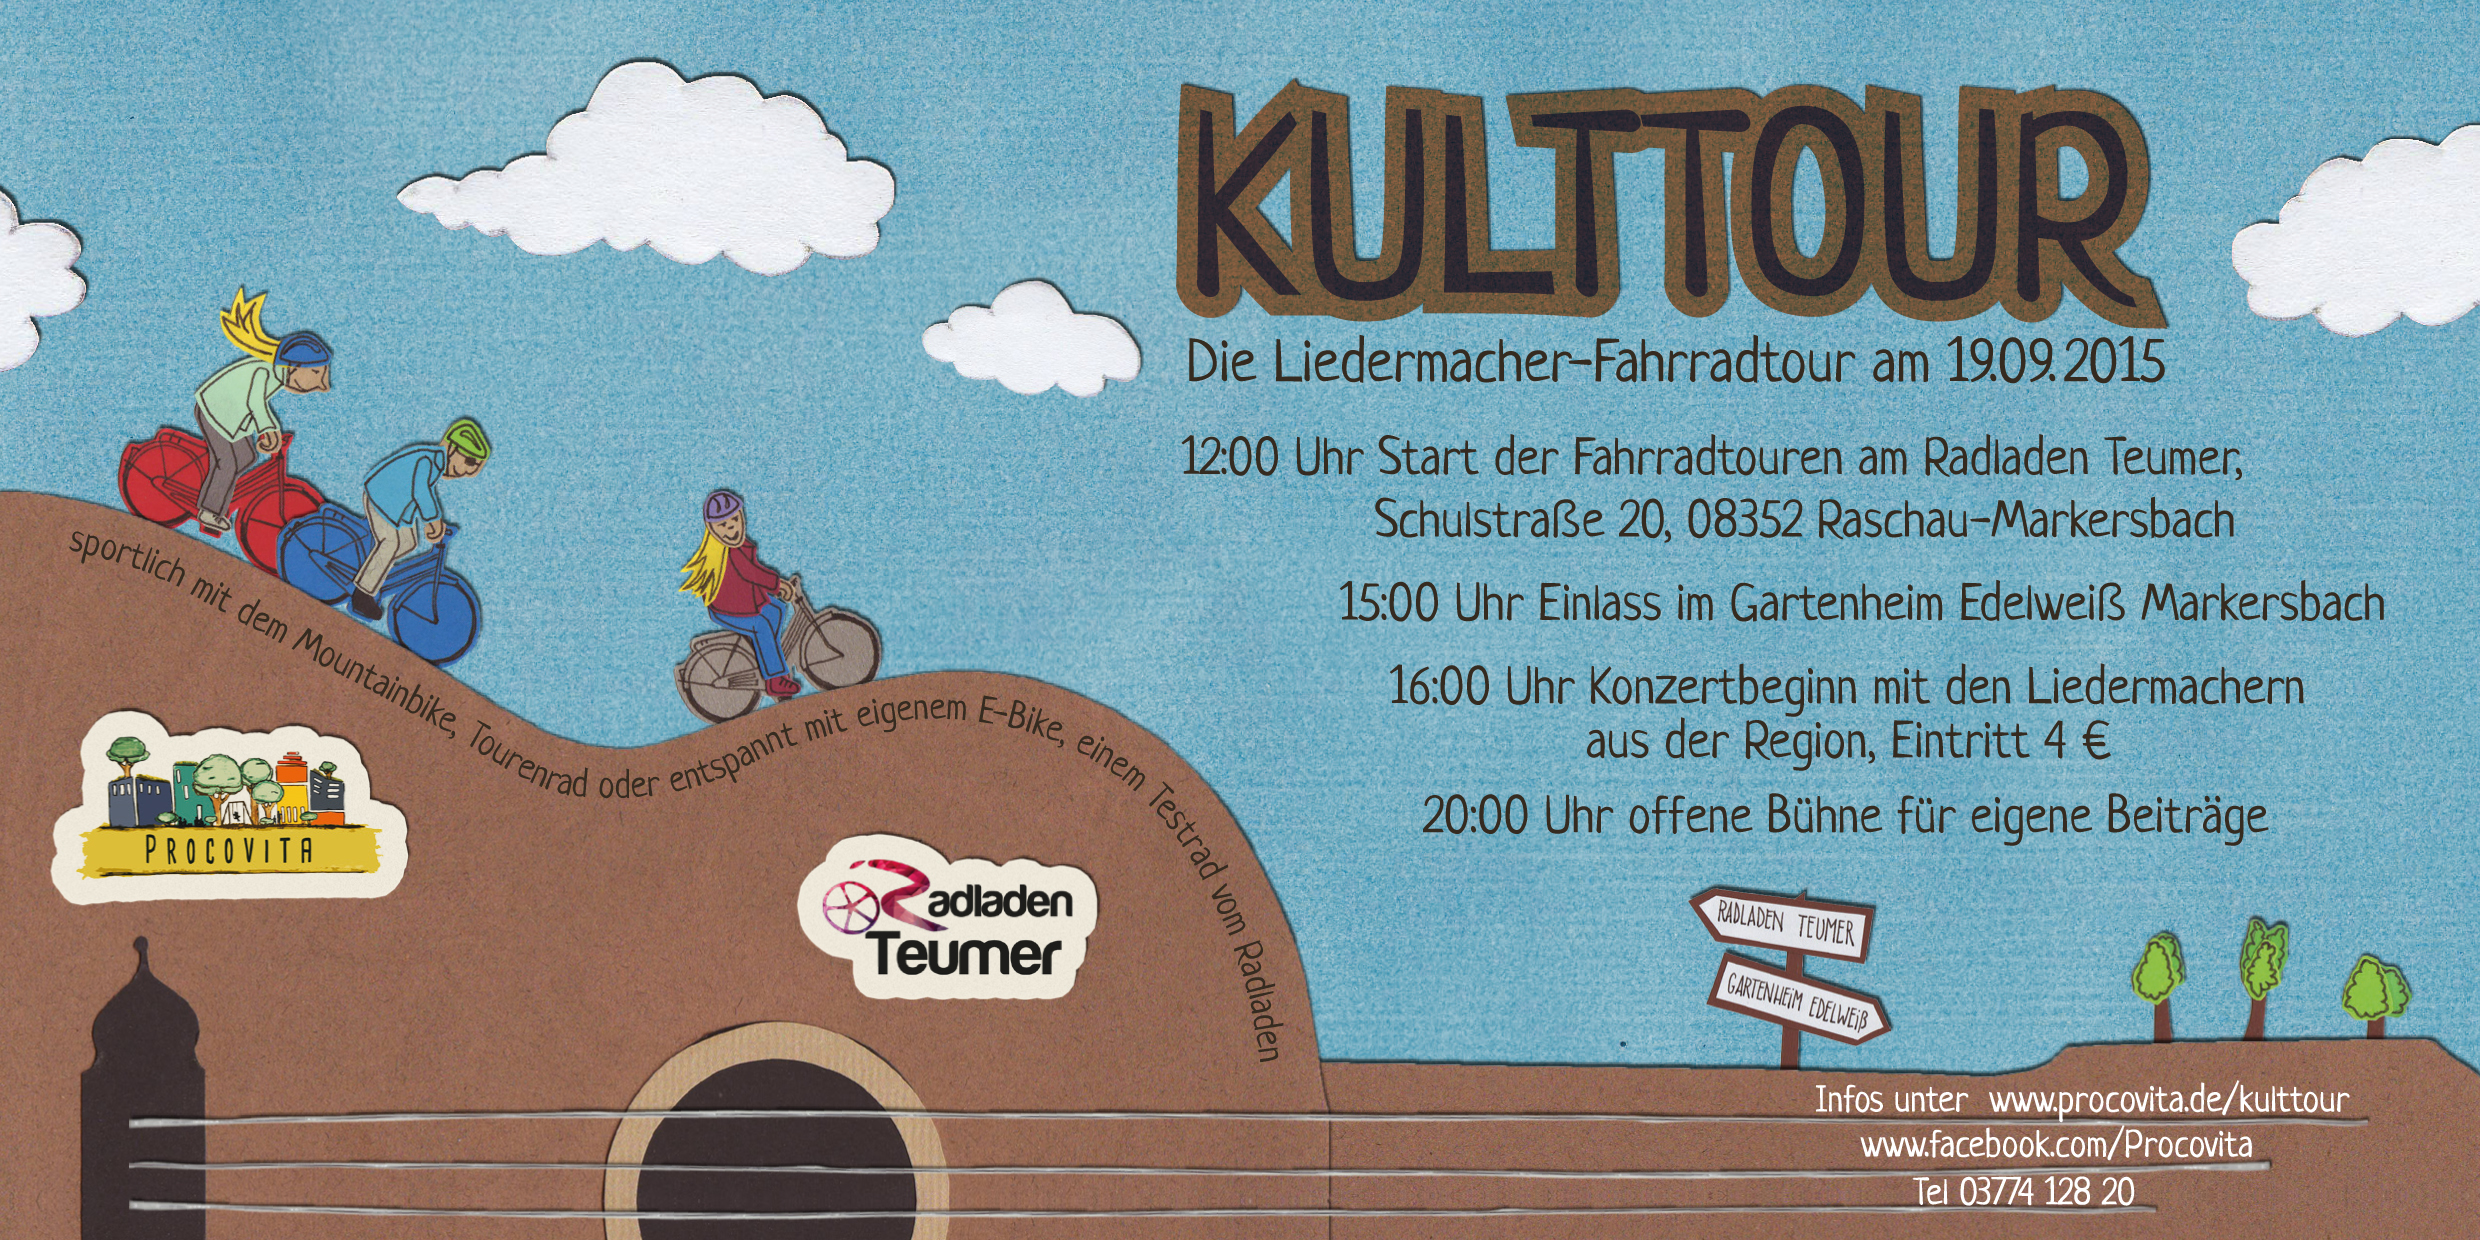 KultTour: Die Liedermacher-Fahrradtour